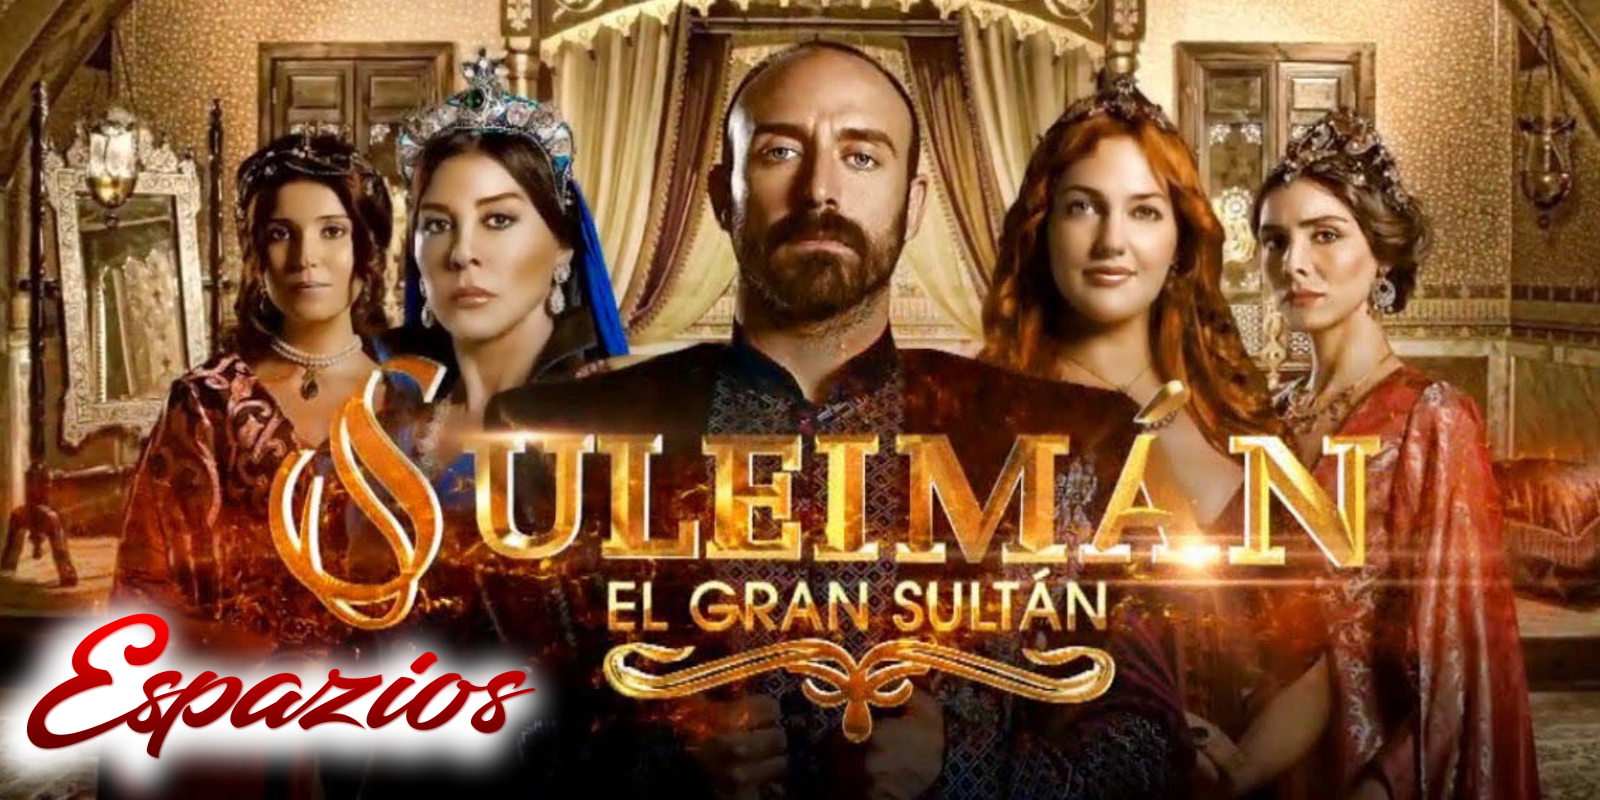 El suleiman el gran sultan